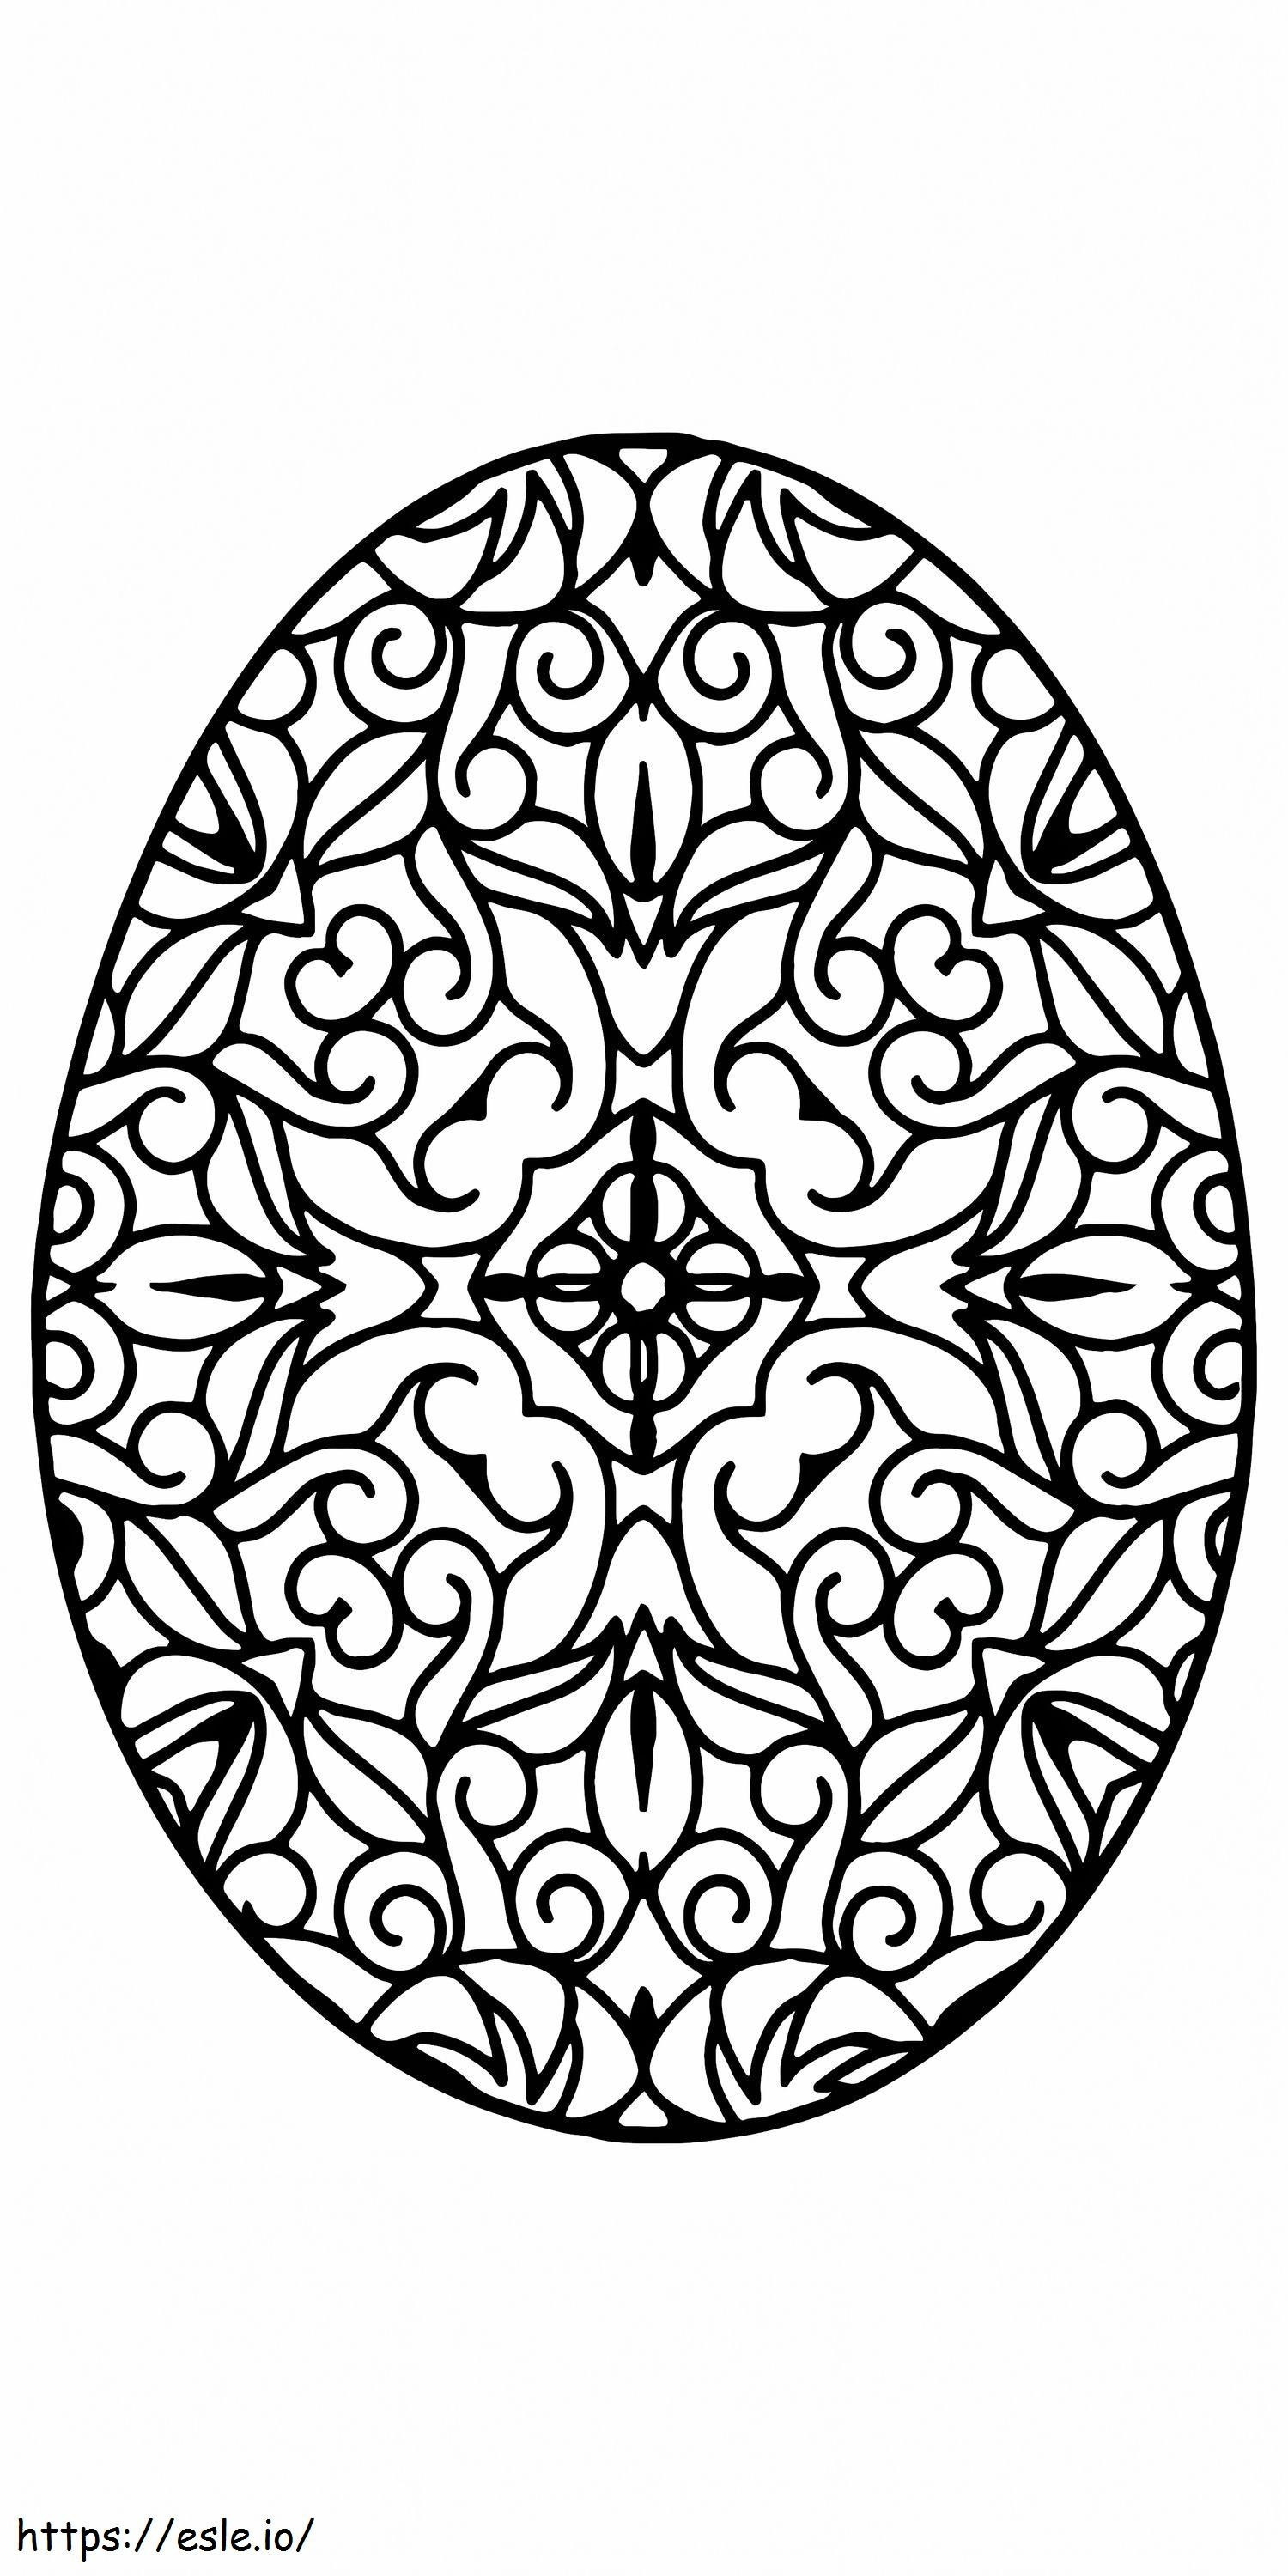 Osterei-Blumenmuster zum Ausdrucken 3 ausmalbilder